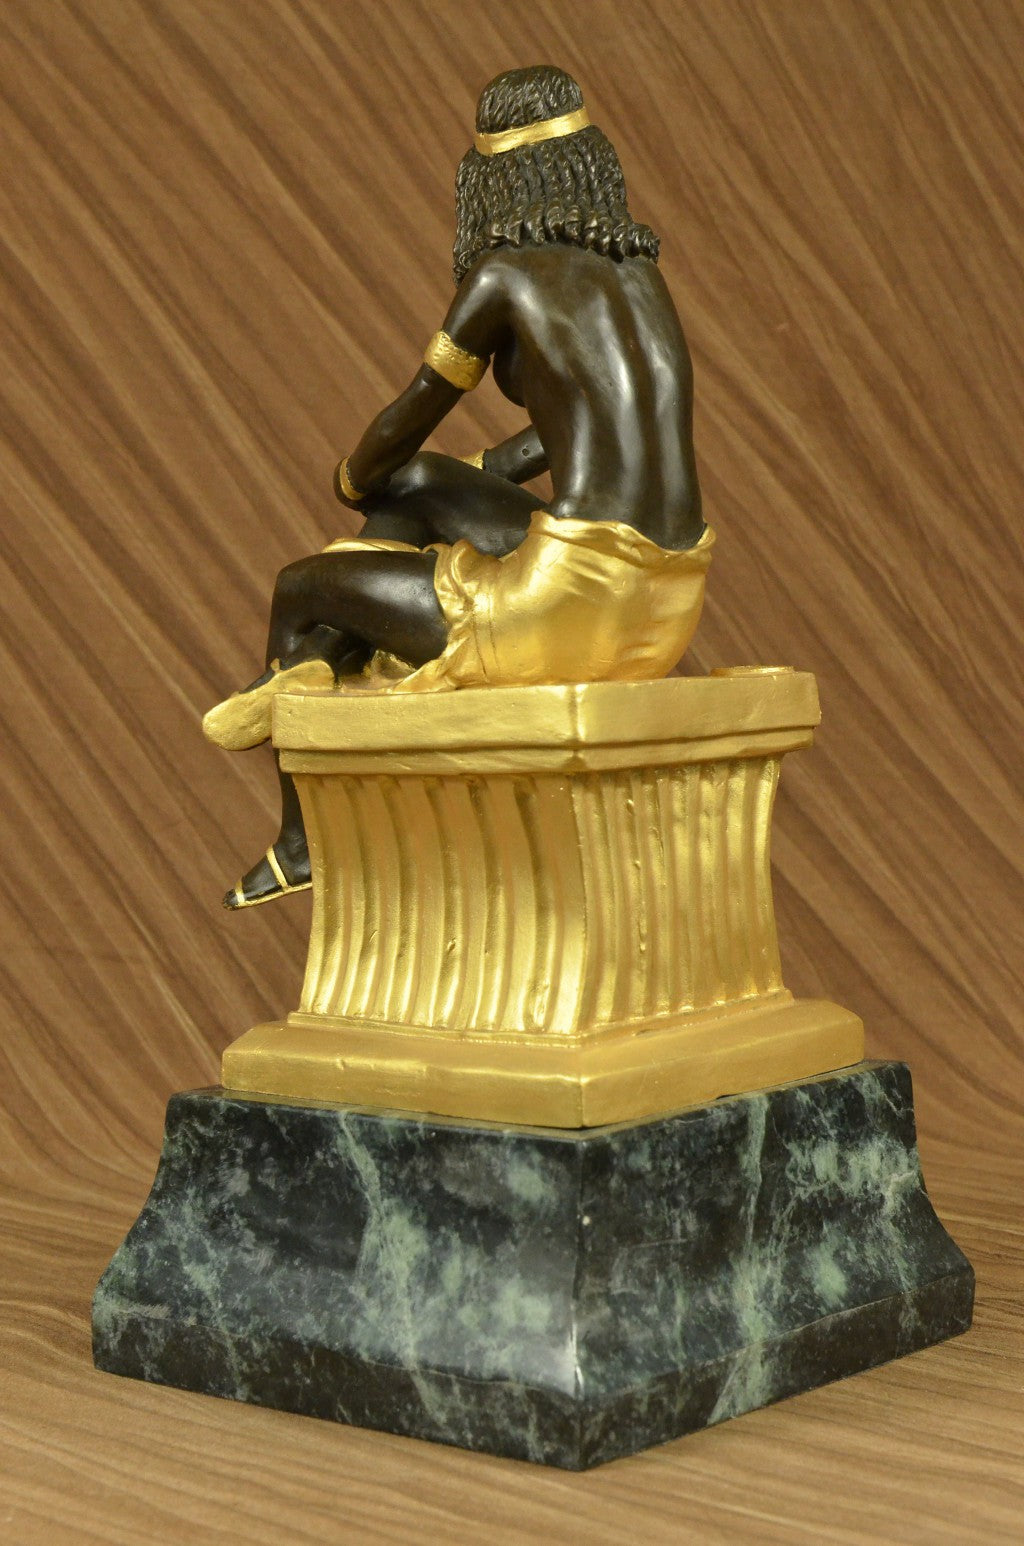 Handcrafted bronze sculpture SALE Lrg Art Chiparus Deco Nouveau Art Signed